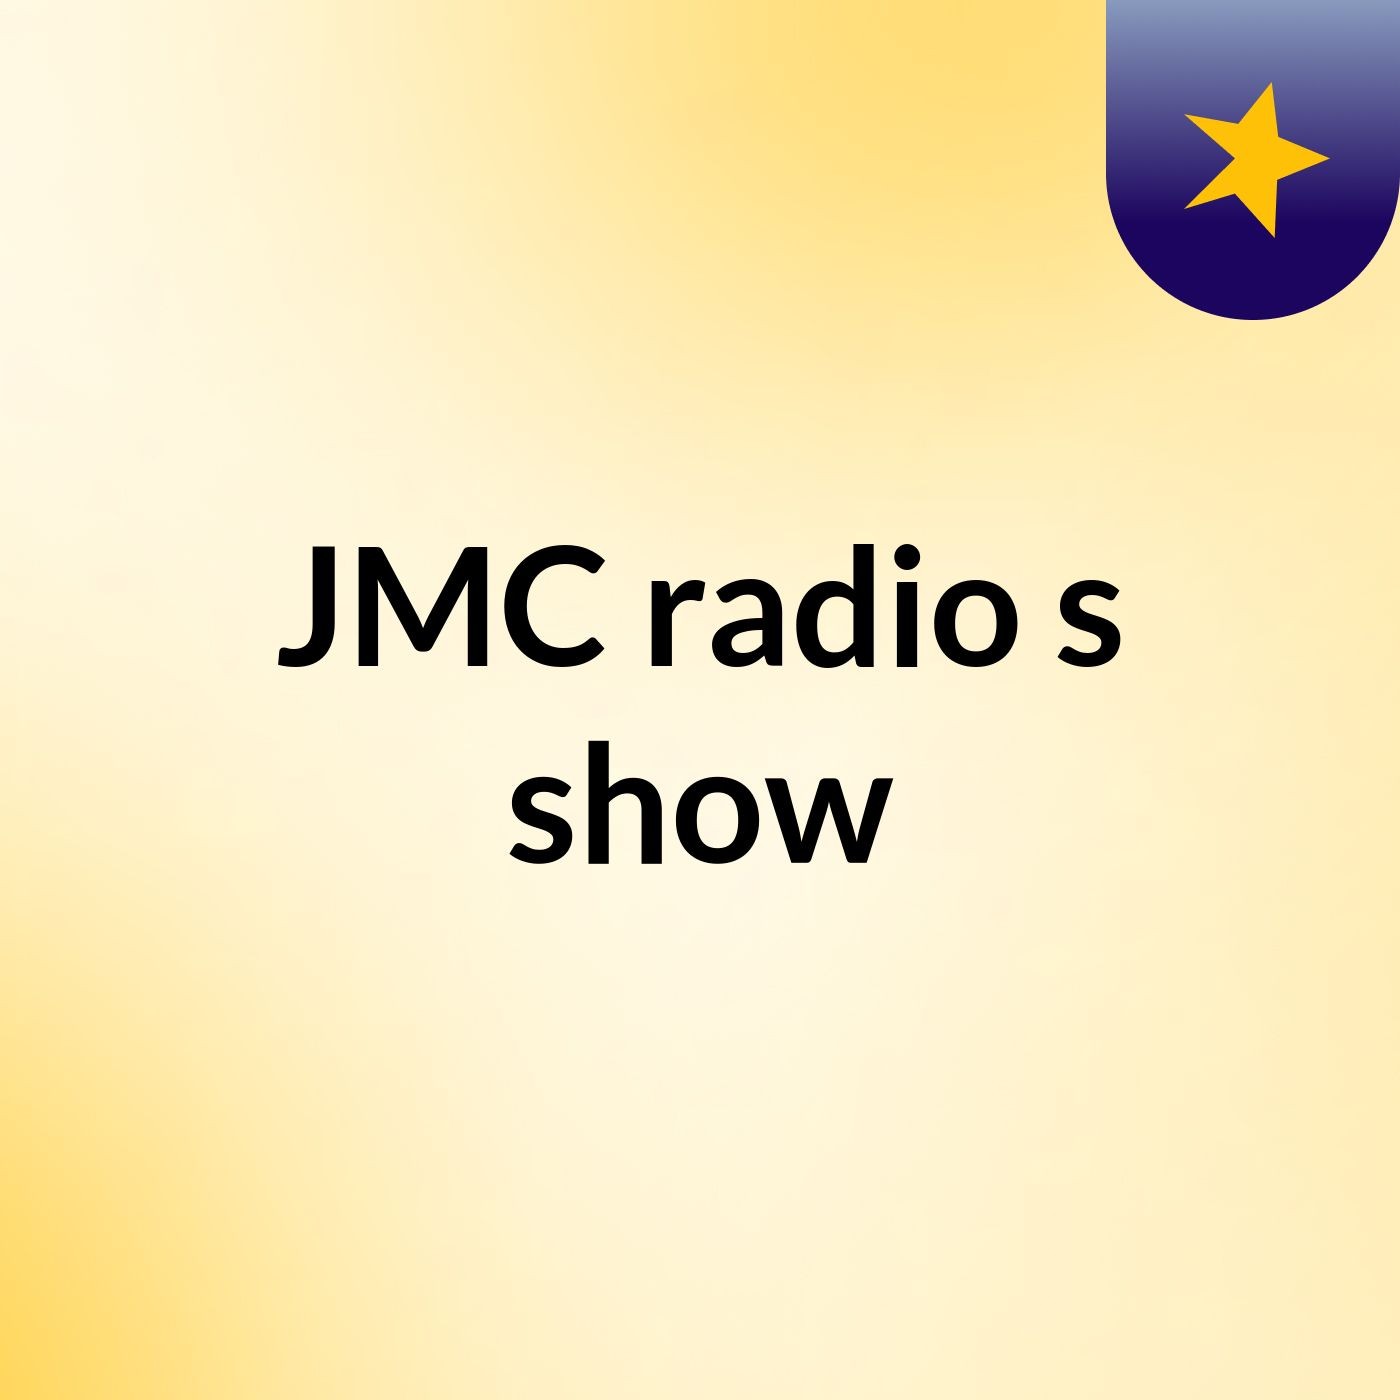 JMC radio's show